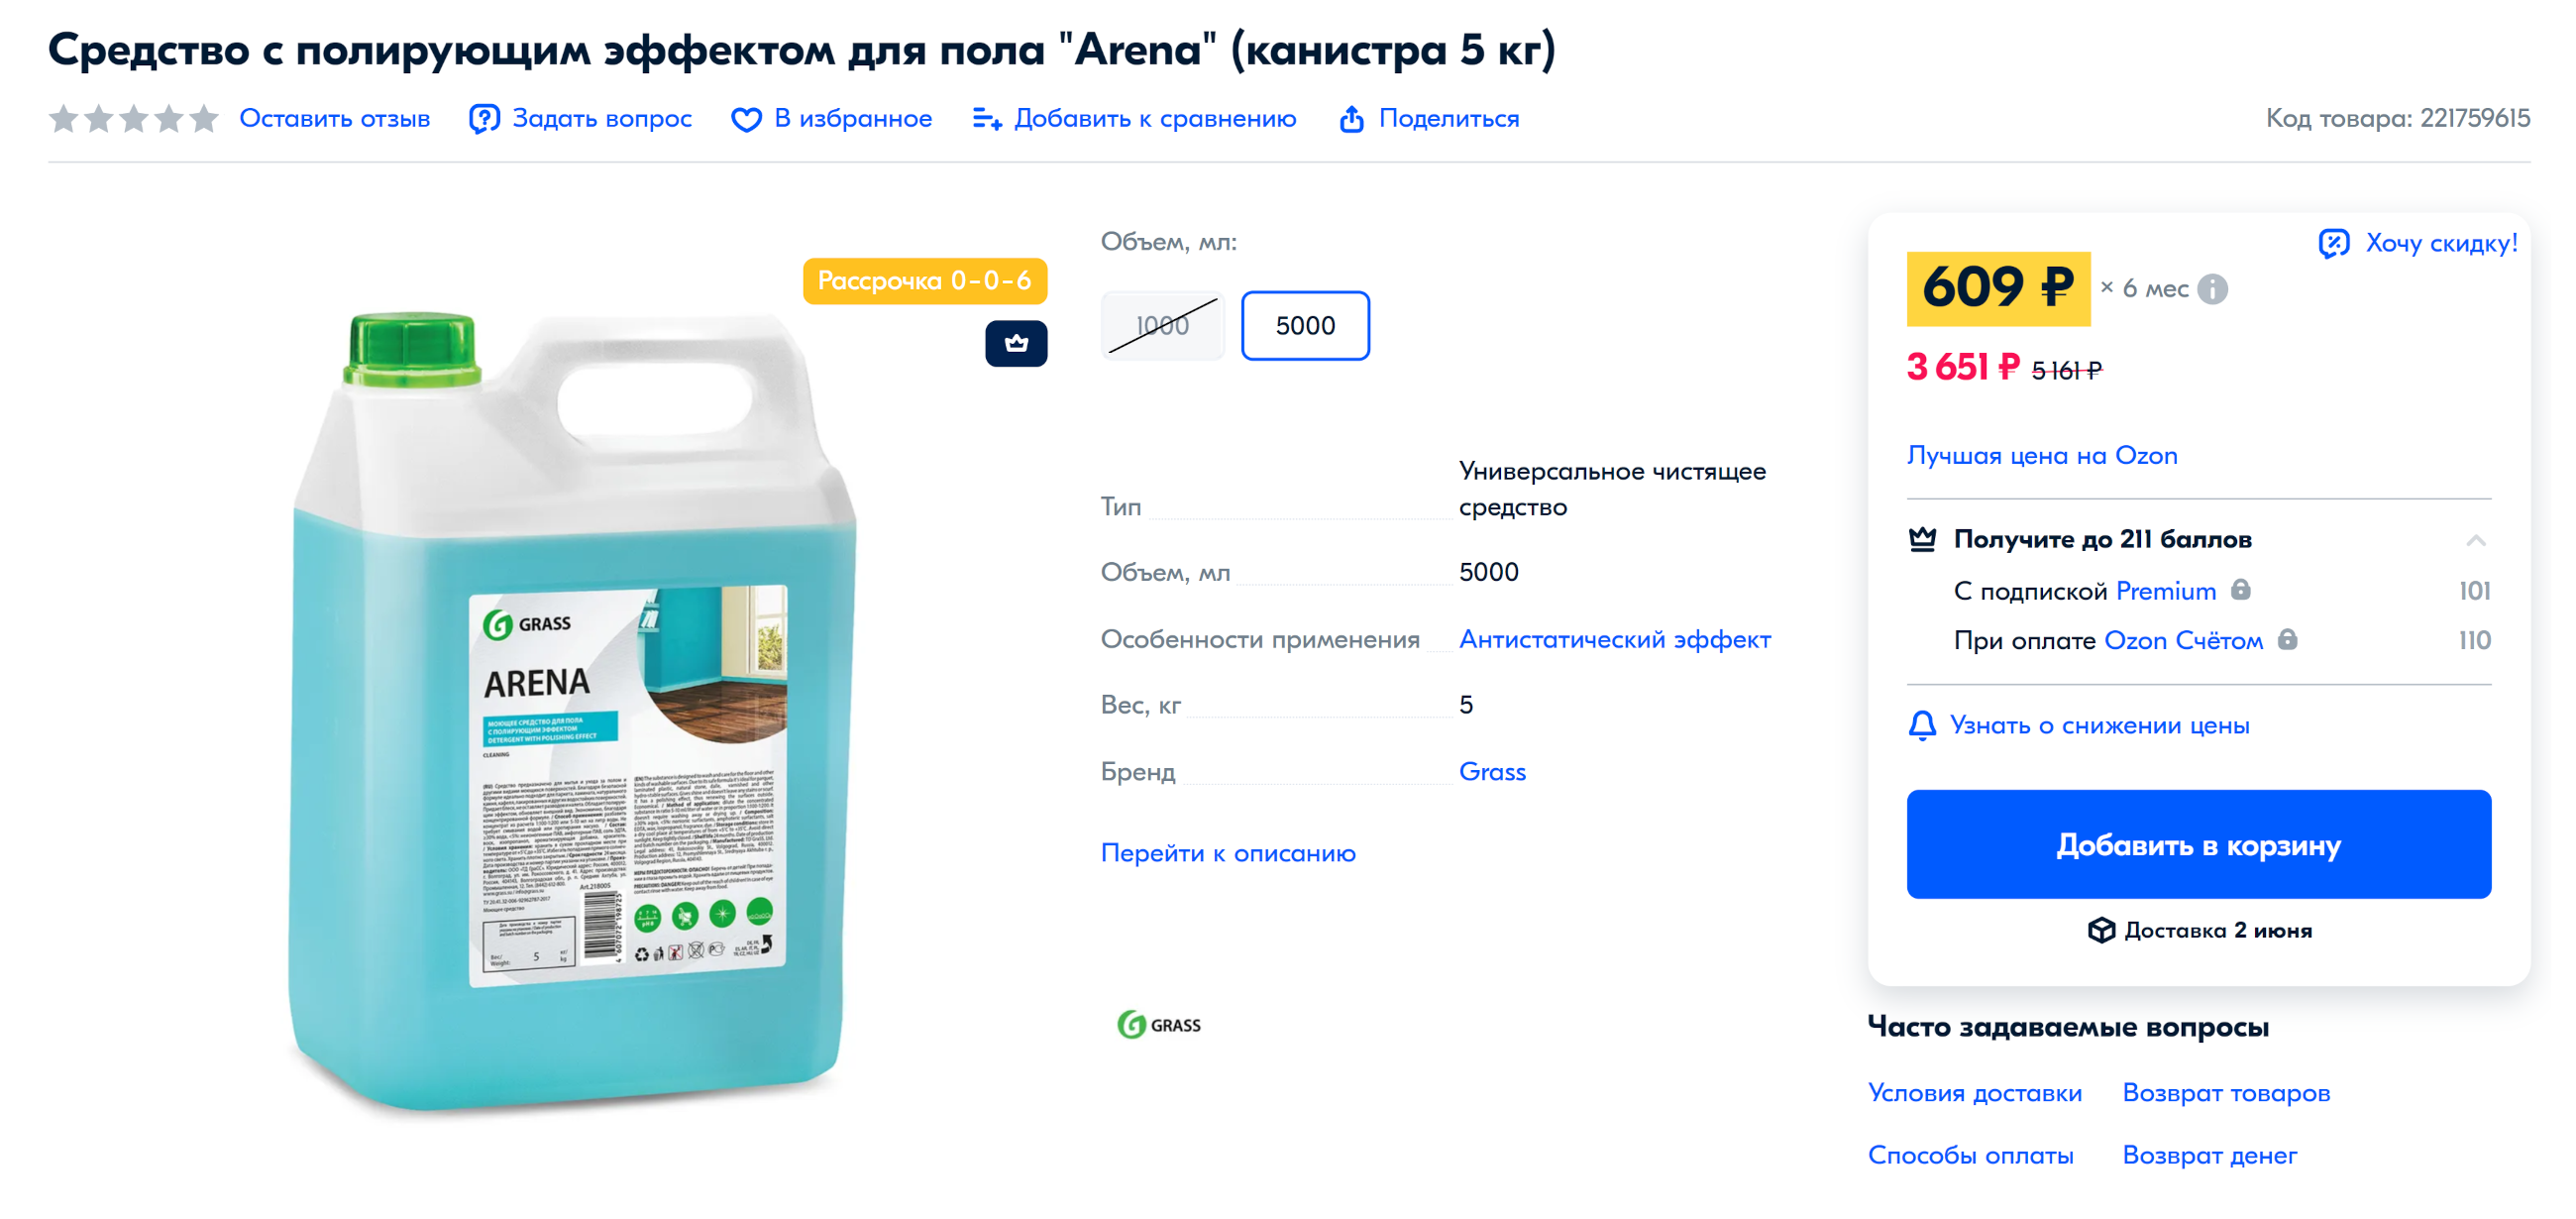 Хорошие средства для мытья пола стоят дорого, но такой упаковки хватит на несколько лет. Источник: ozon.ru